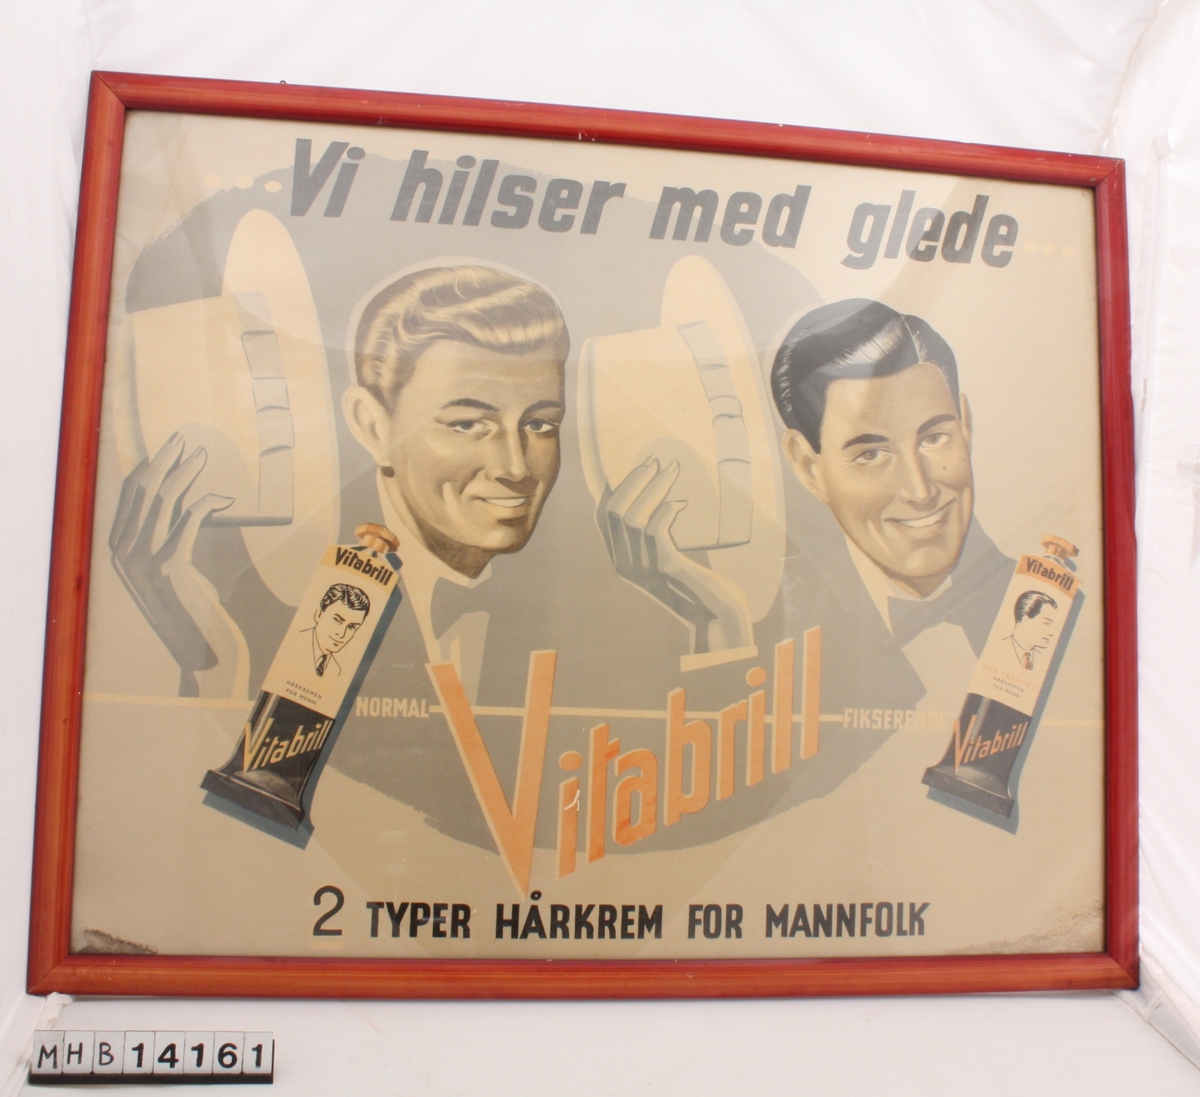 Reklameplakat i glass og ramme. Bildet har rektangulær form og rammen er av lakket tre. Plakaten er reklame for Vitabrill hårkrem, og viser to menn som løfter på hatten for å hilse.